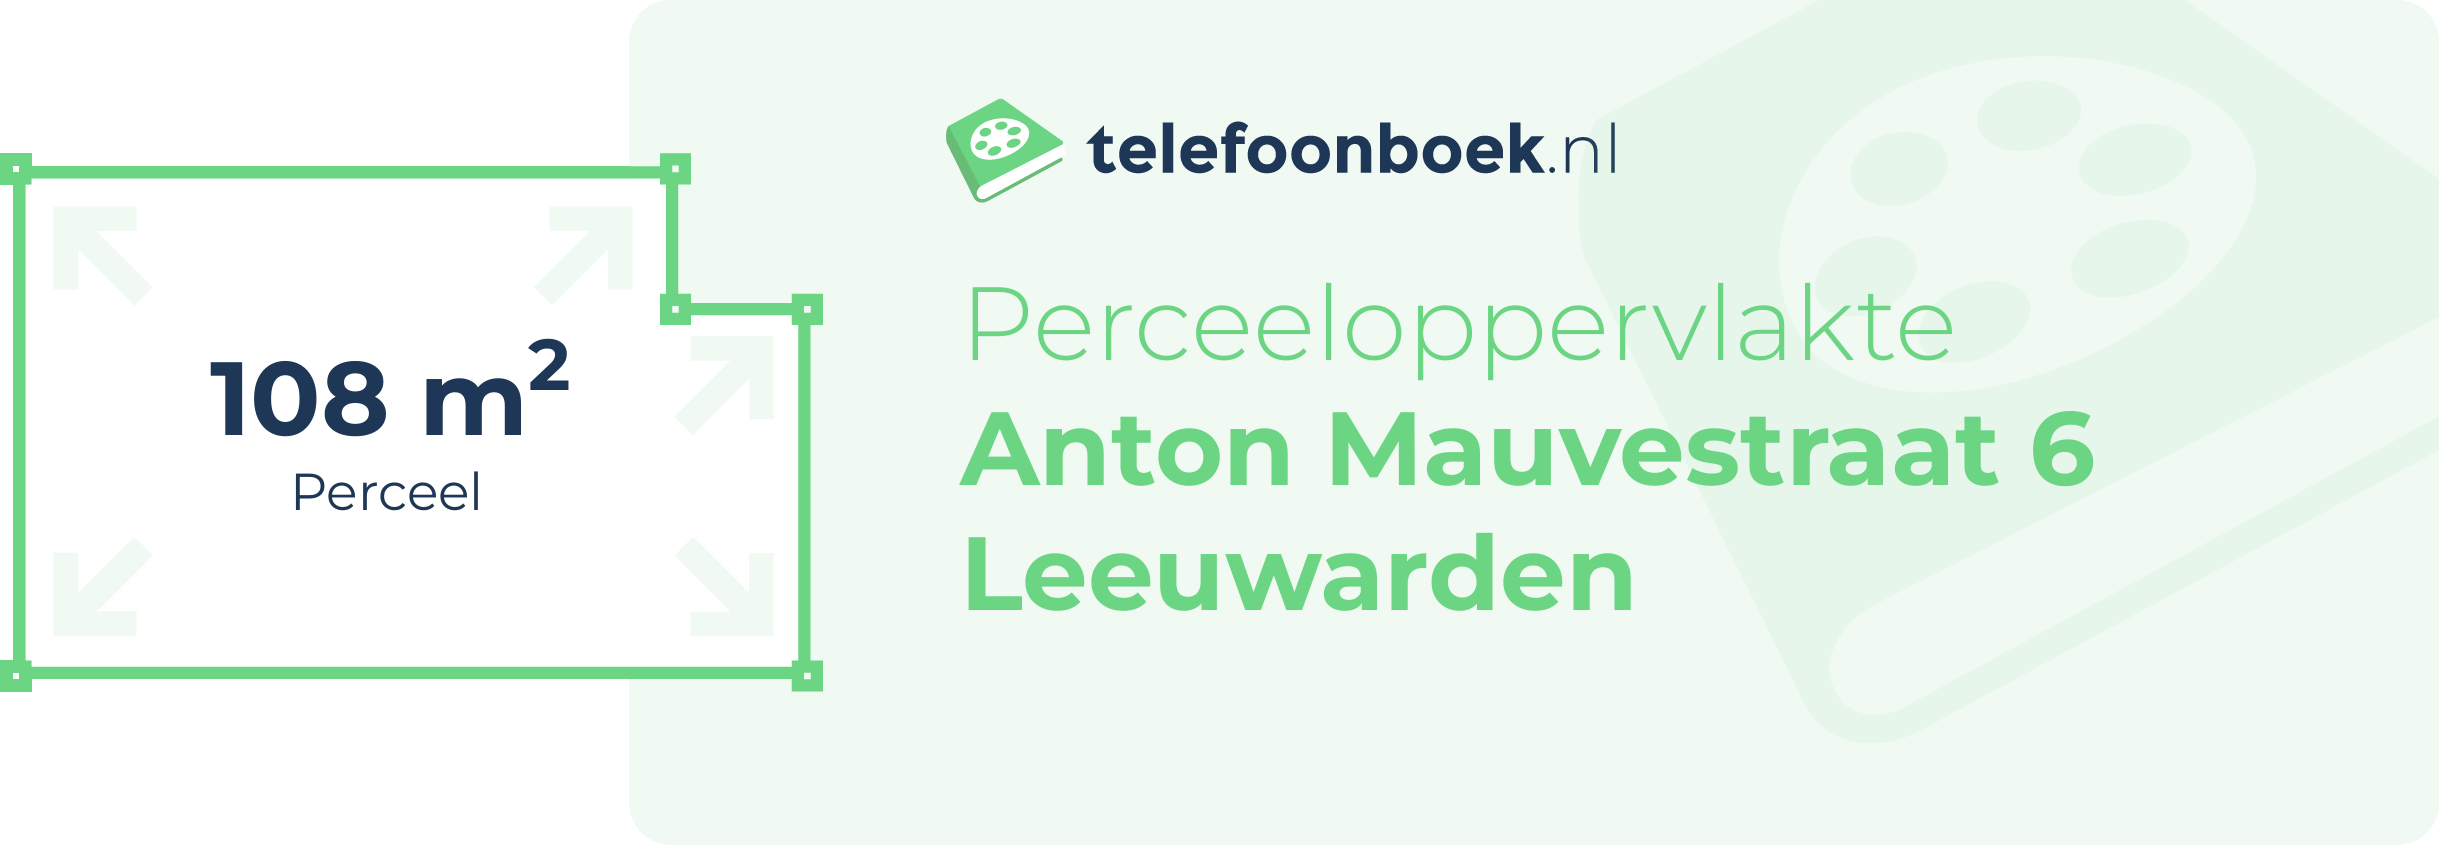 Perceeloppervlakte Anton Mauvestraat 6 Leeuwarden